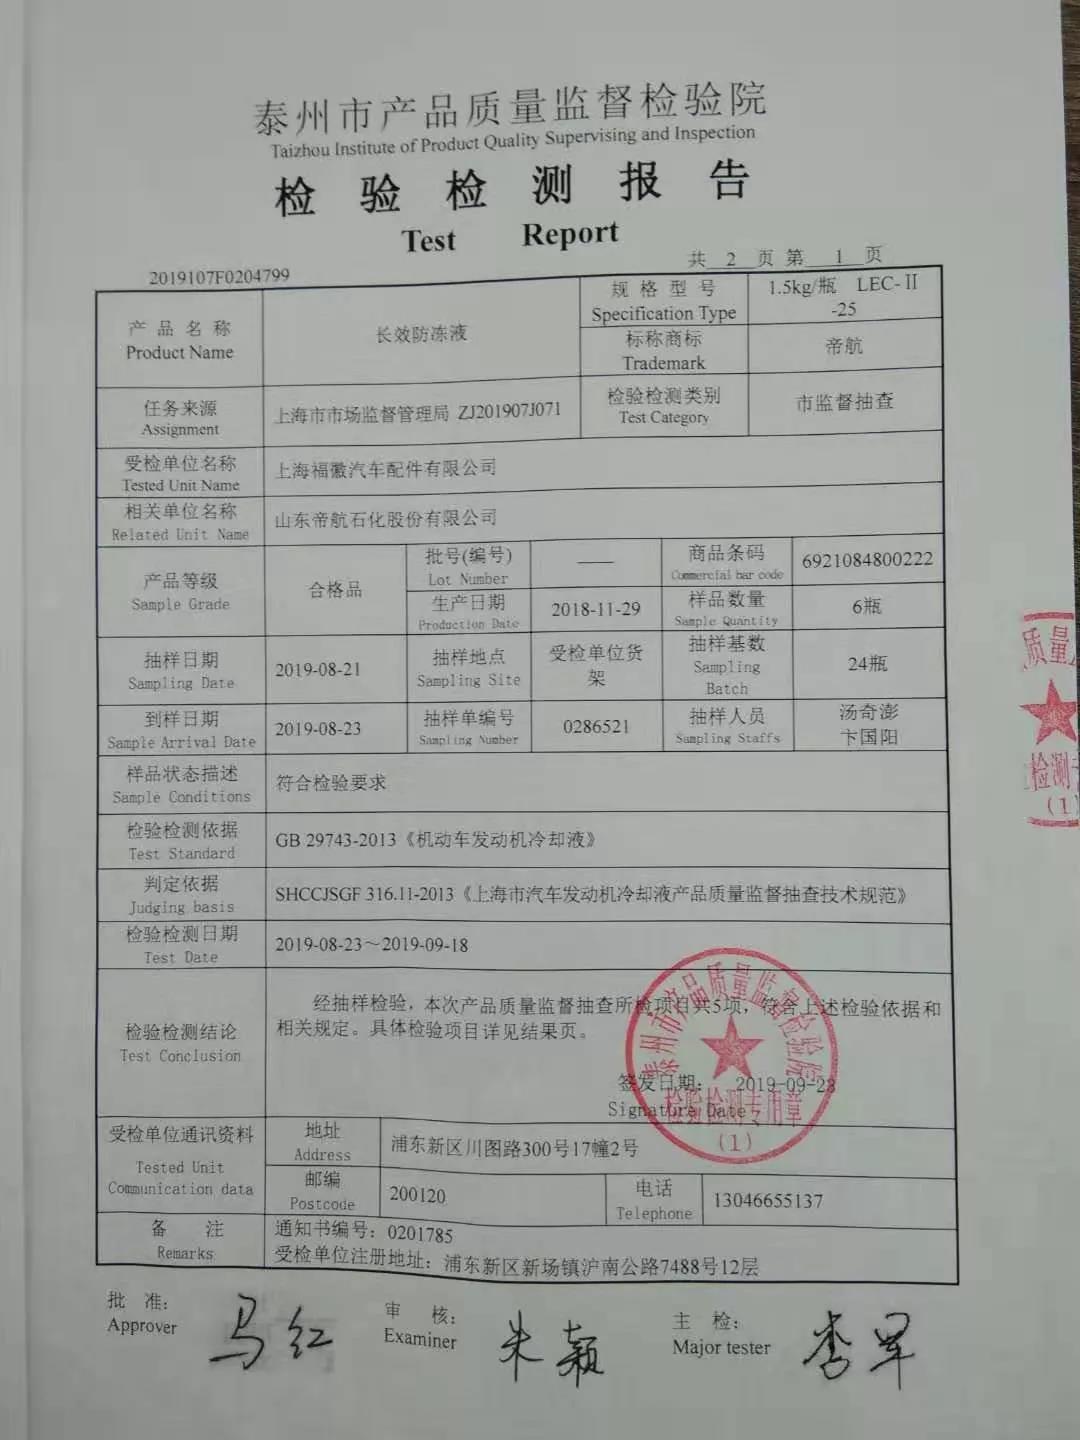 帝航长效防冻液在上海市场监督管理局的抽检检查中产品合格